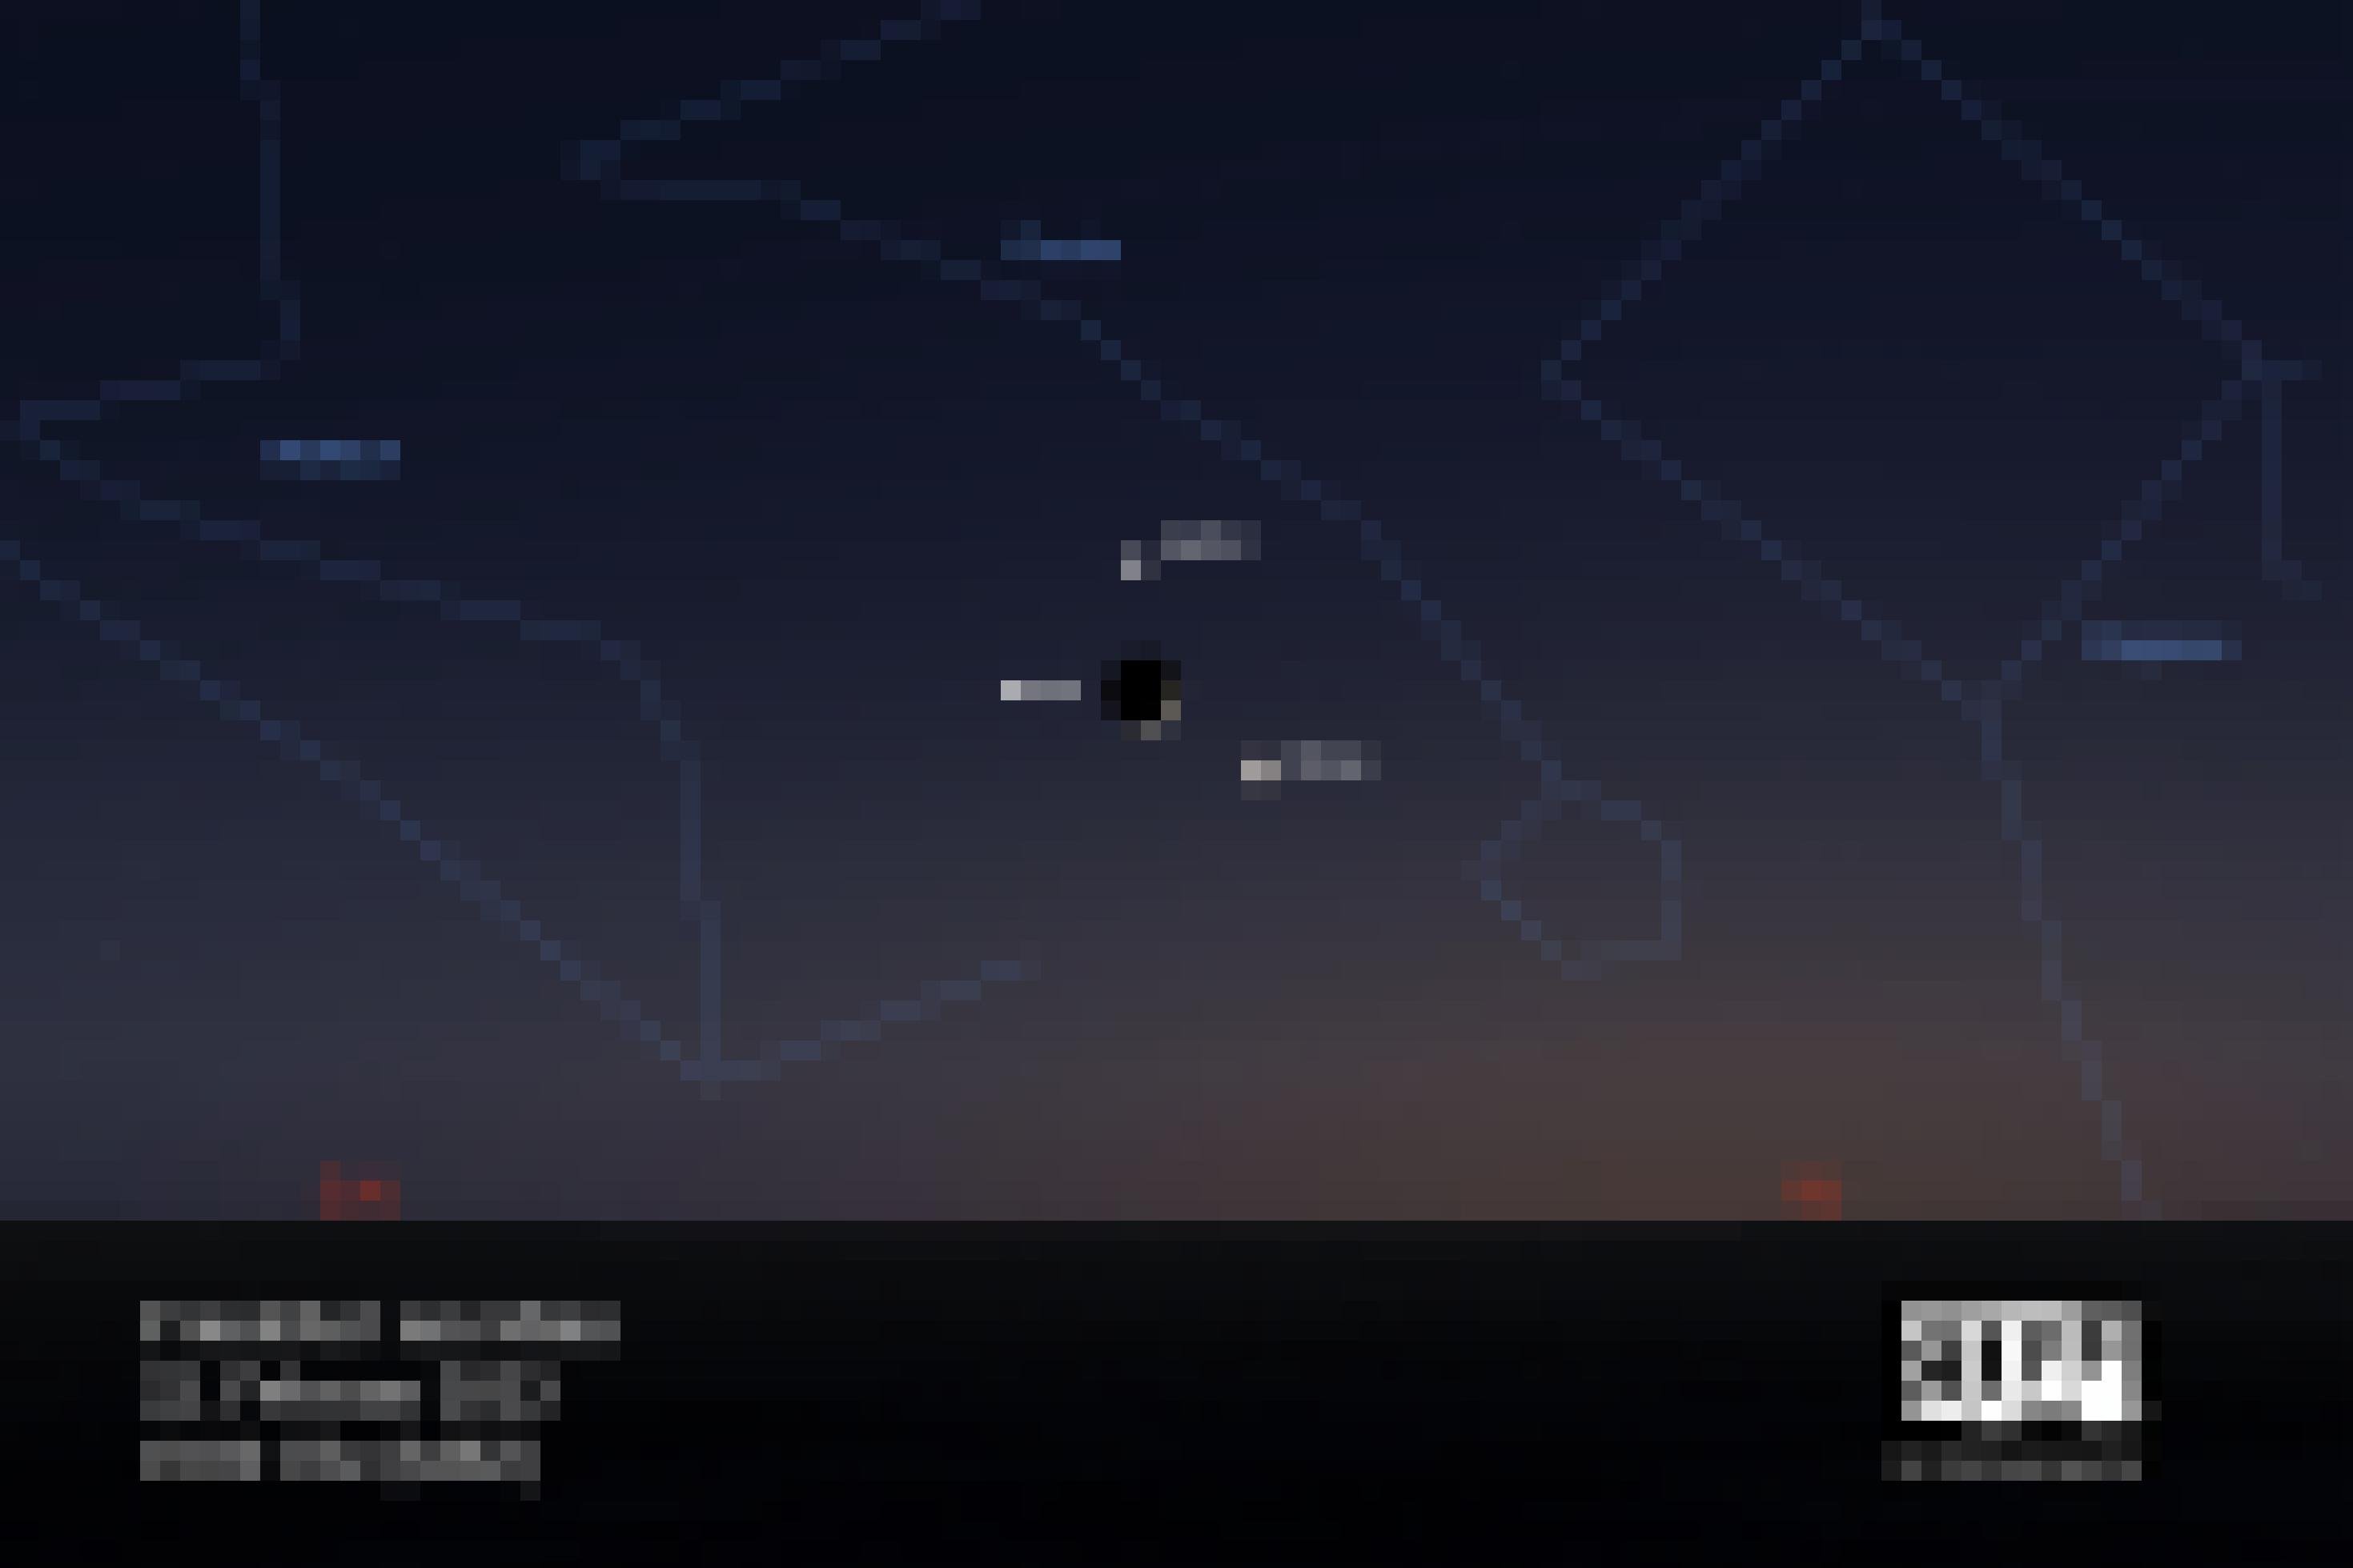 Eine Grafik zeigt in der Abenddämmerung die schmale Sichel des zunehmenden Mondes zwischen den hellen Planeten Venus und Jupiter.